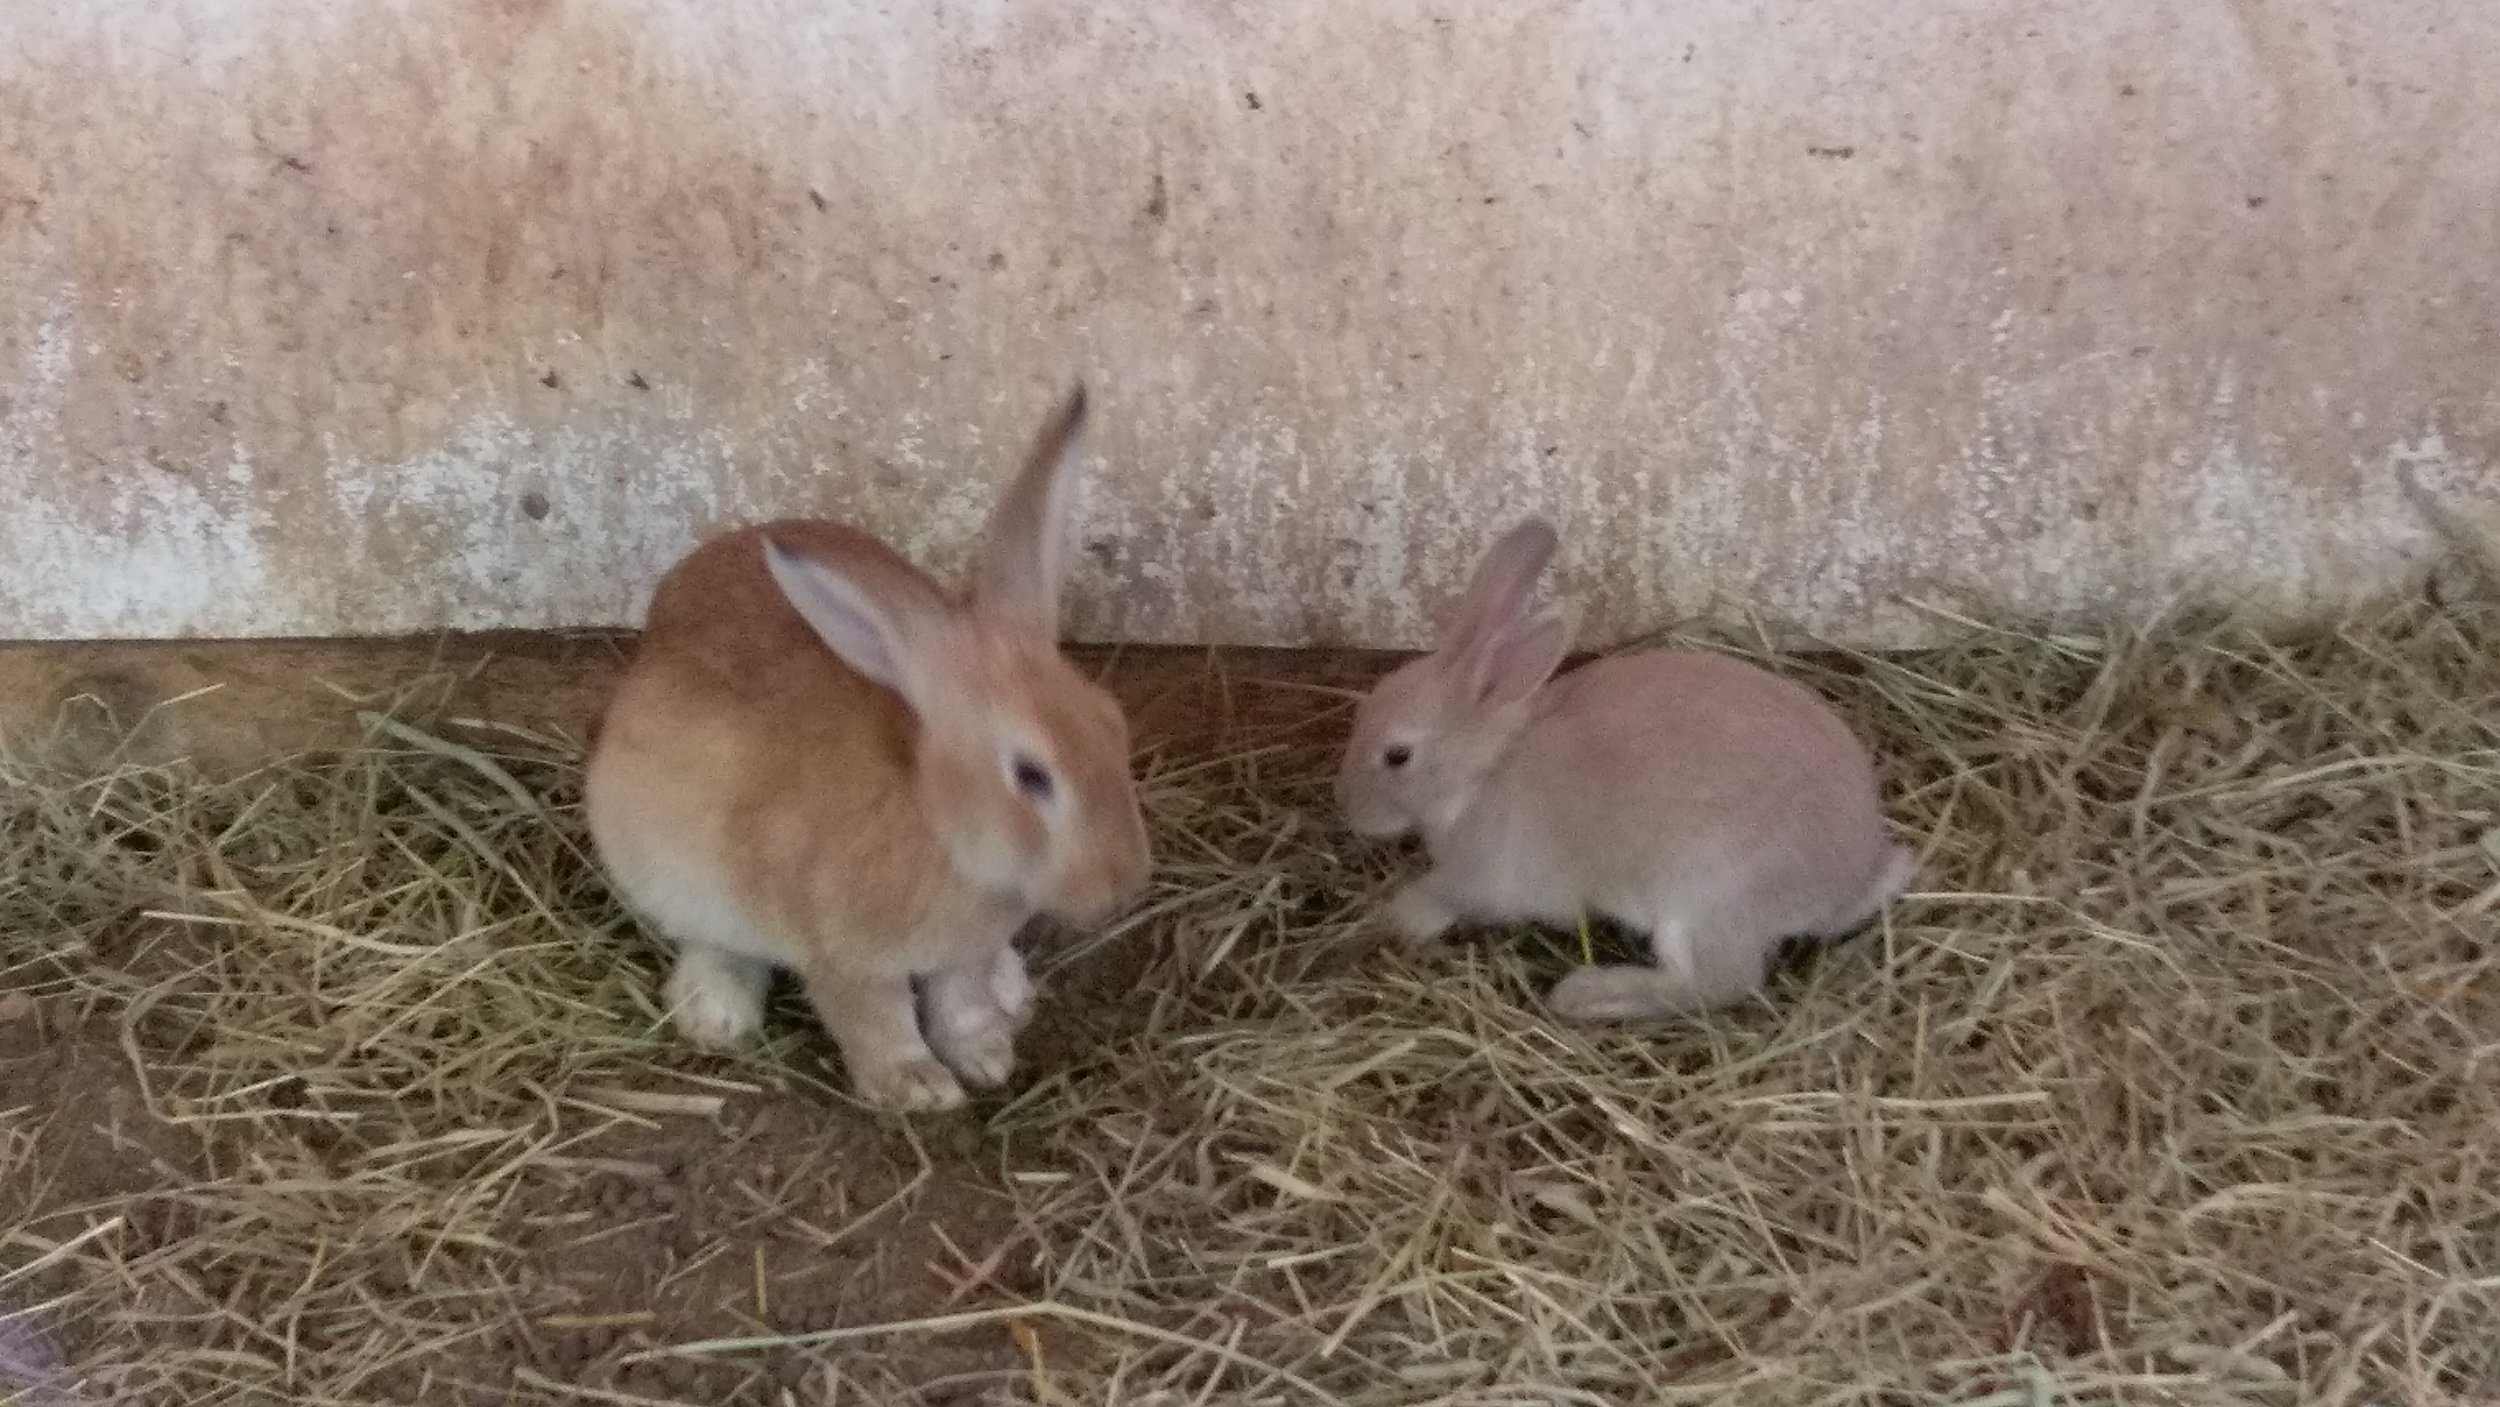 More bunnies